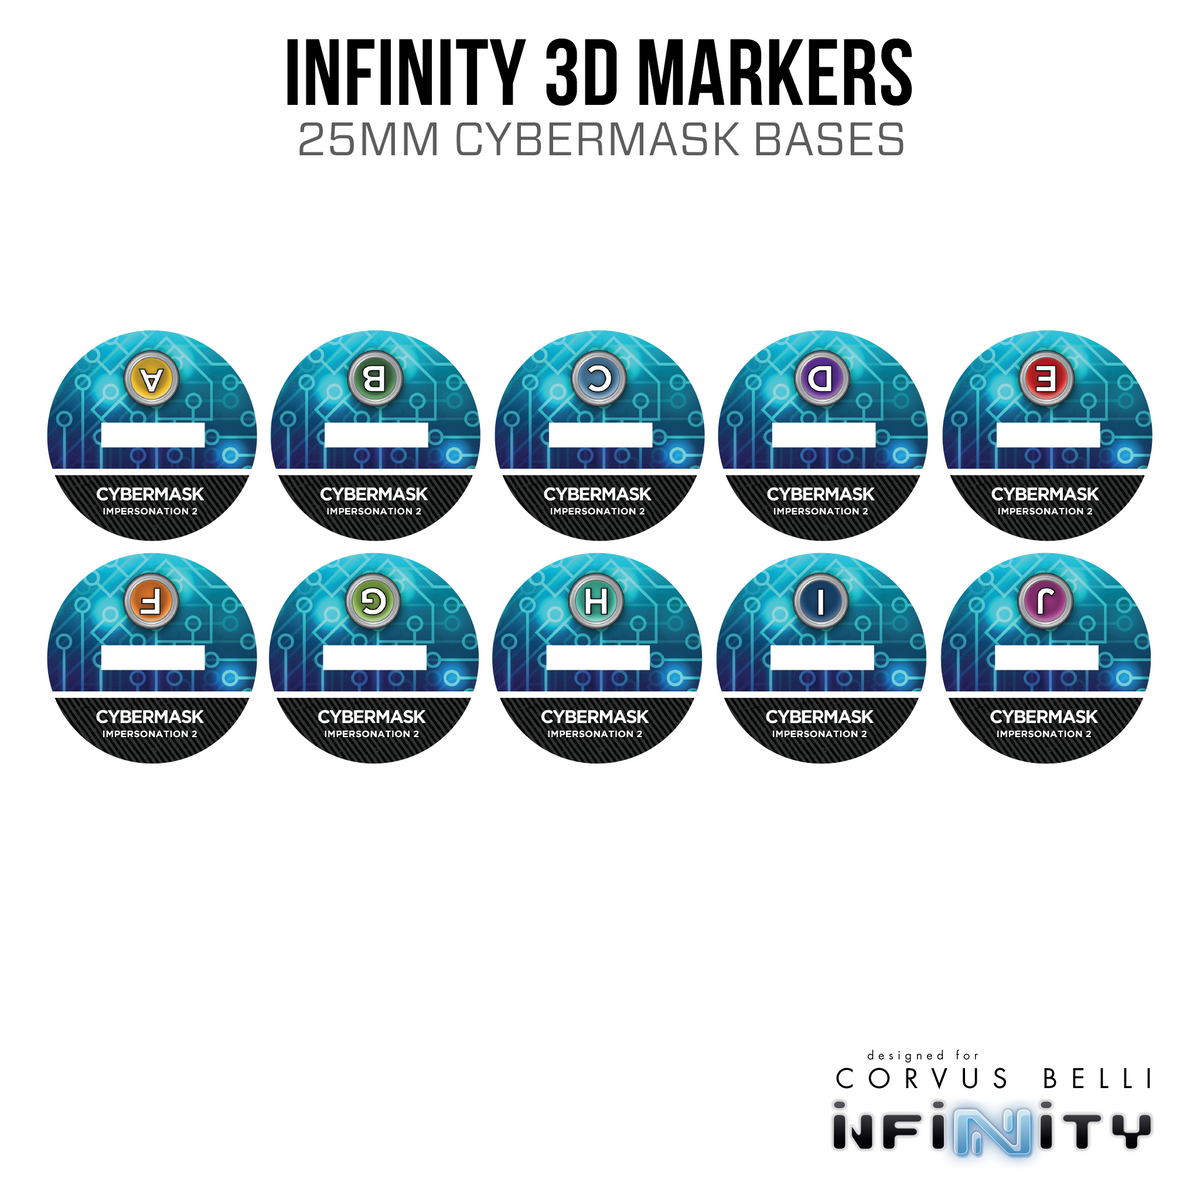 Infinity 3D Markers: Intruder, Male (25mm Cybermask)